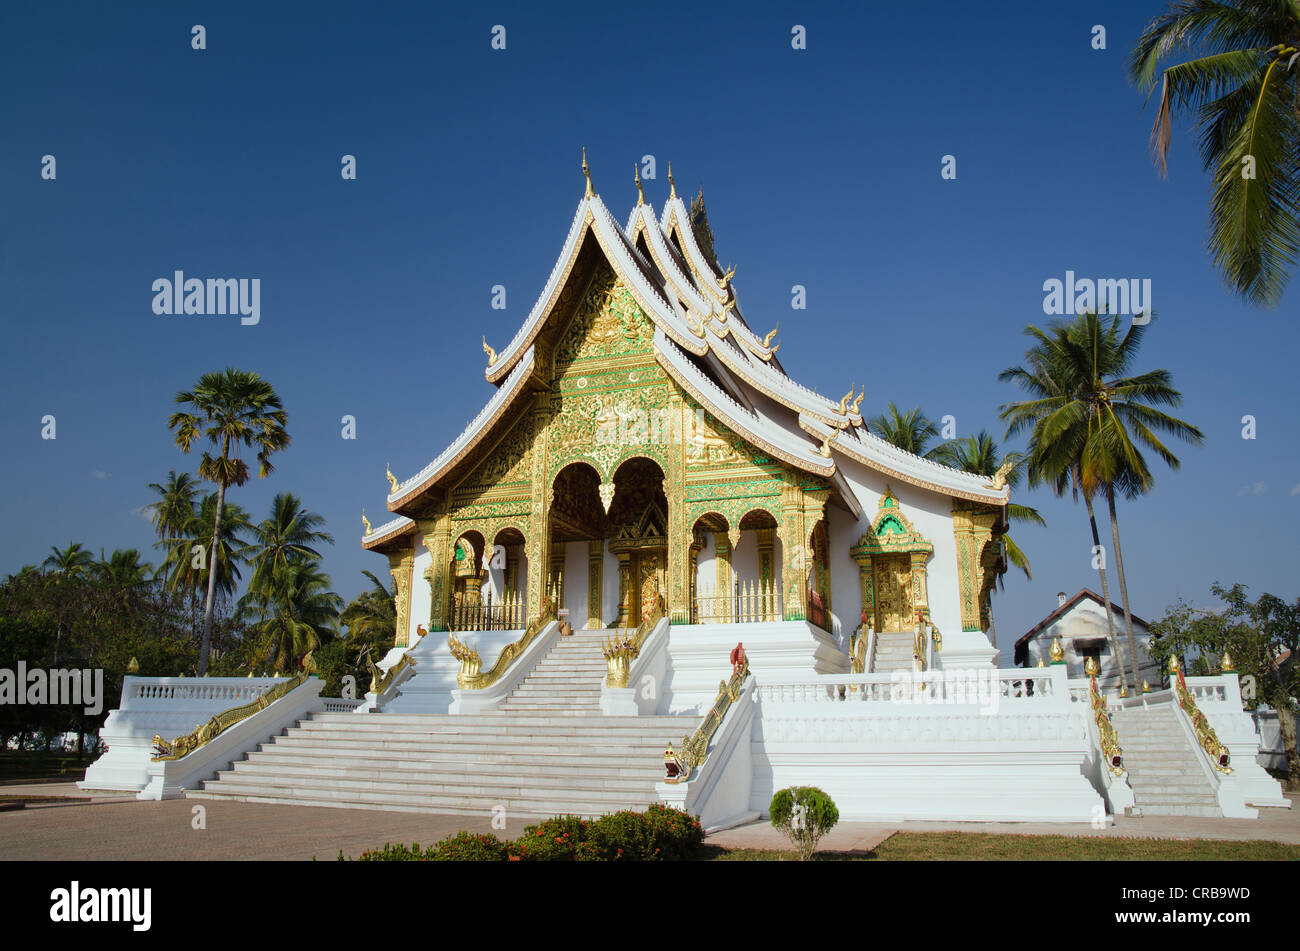 Royal Palace, National Museum, temple, Luang Prabang, Laos, Indochina, Asia Stock Photo